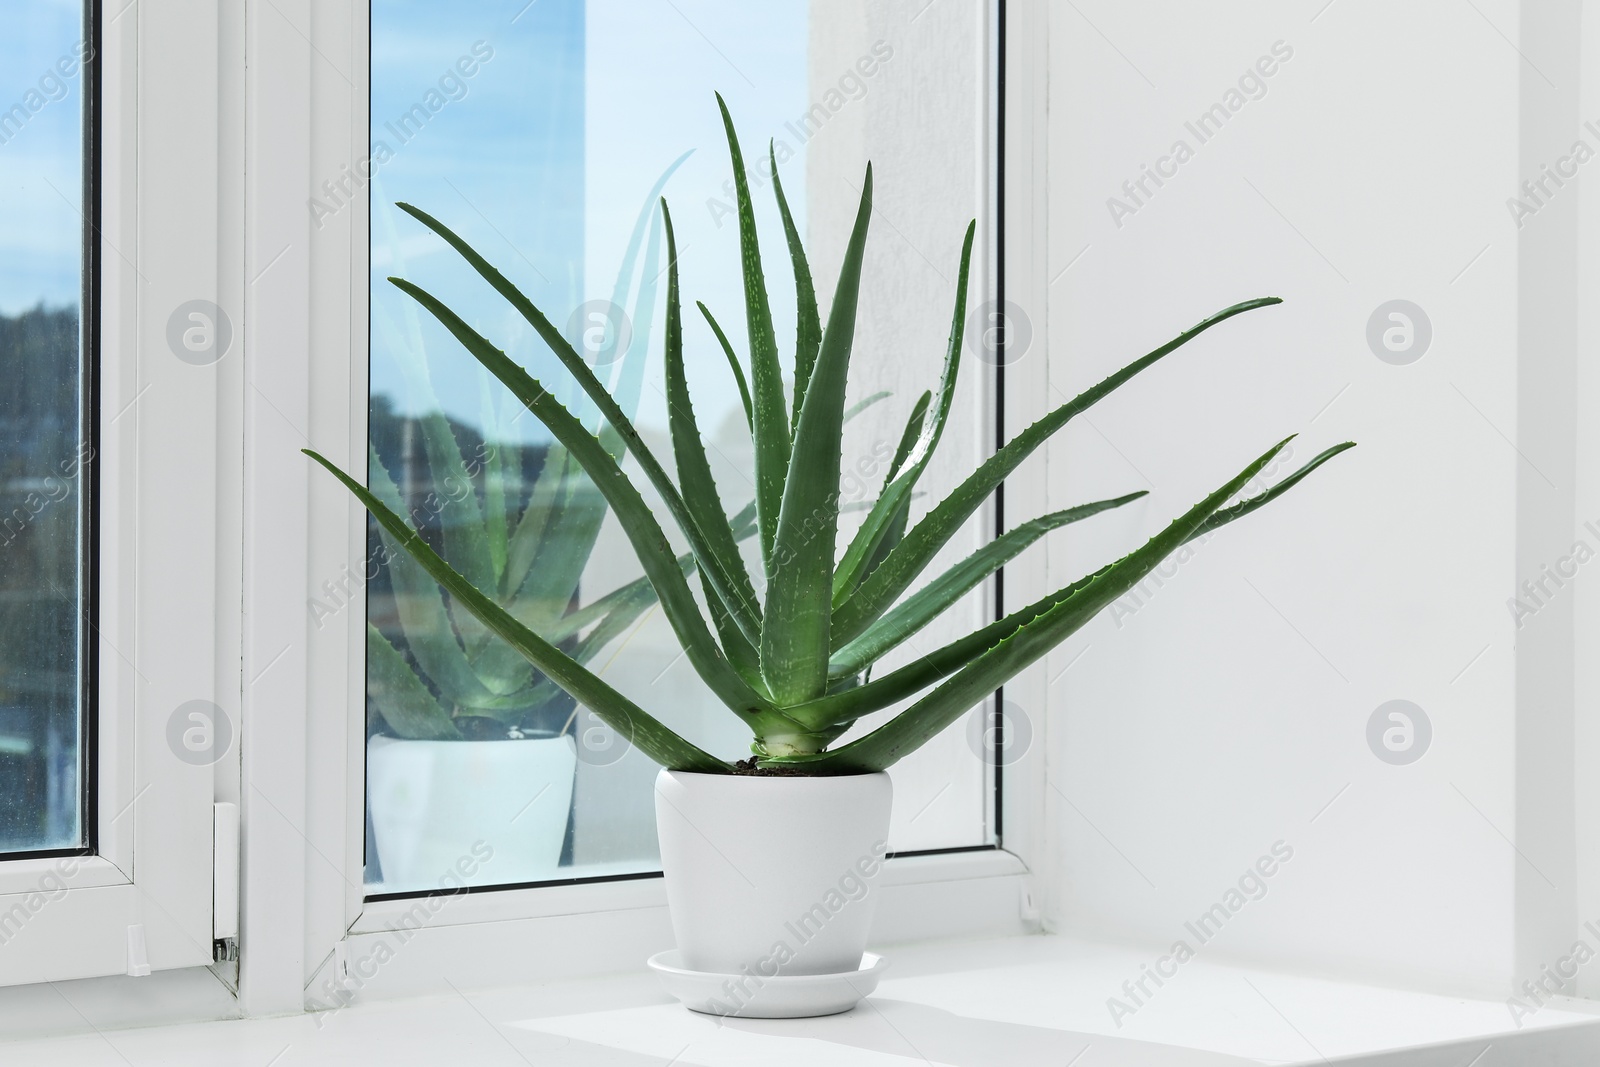 Photo of Green aloe vera plant in pot on windowsill